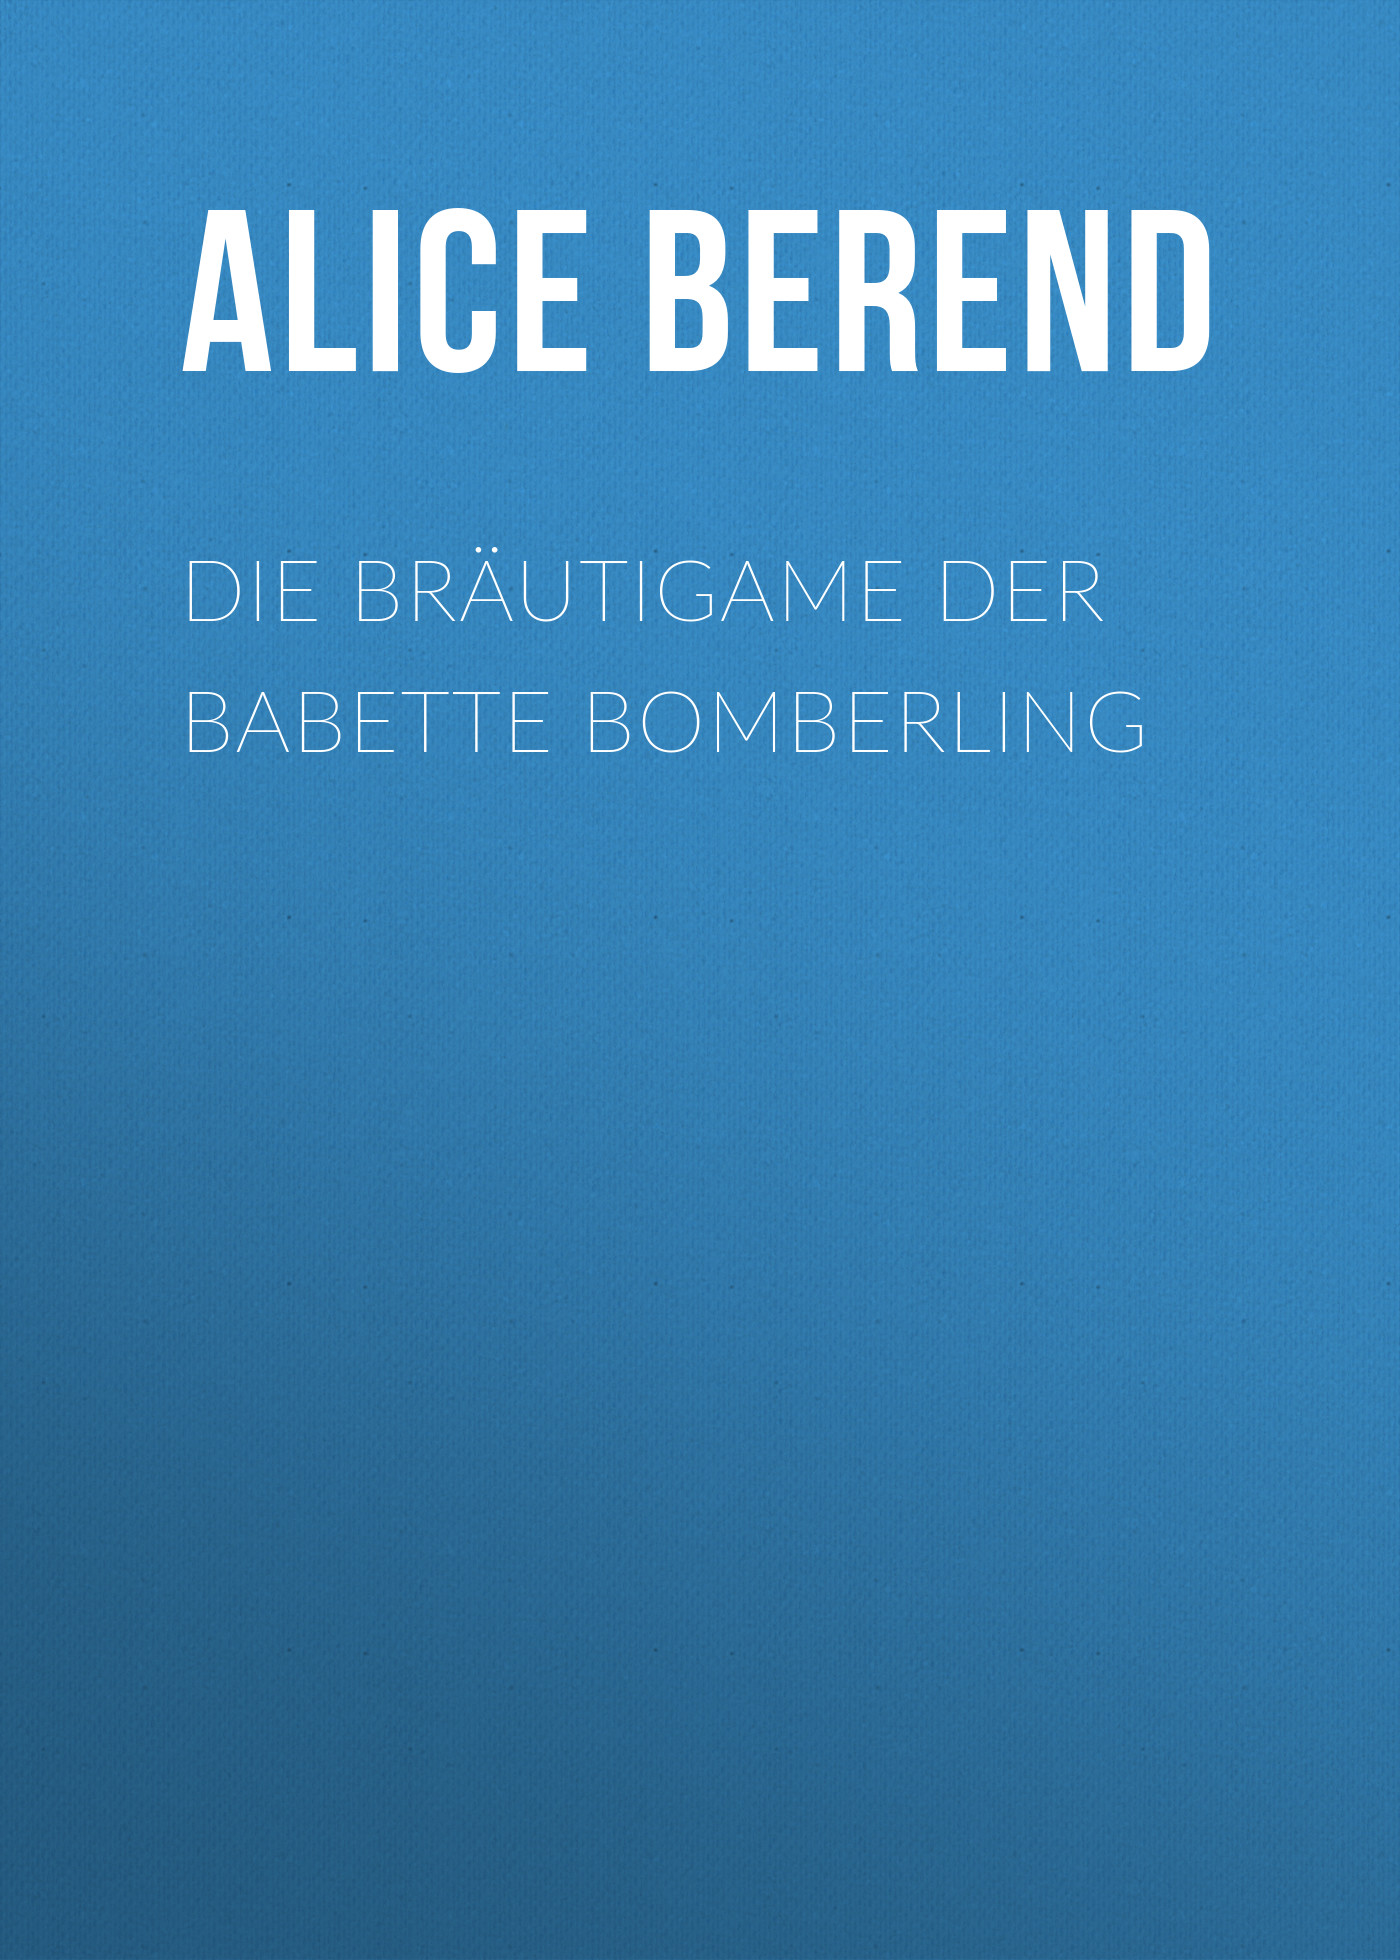 Книга Die Bräutigame der Babette Bomberling из серии , созданная Alice Berend, может относится к жанру Зарубежная классика. Стоимость электронной книги Die Bräutigame der Babette Bomberling с идентификатором 48632916 составляет 0 руб.